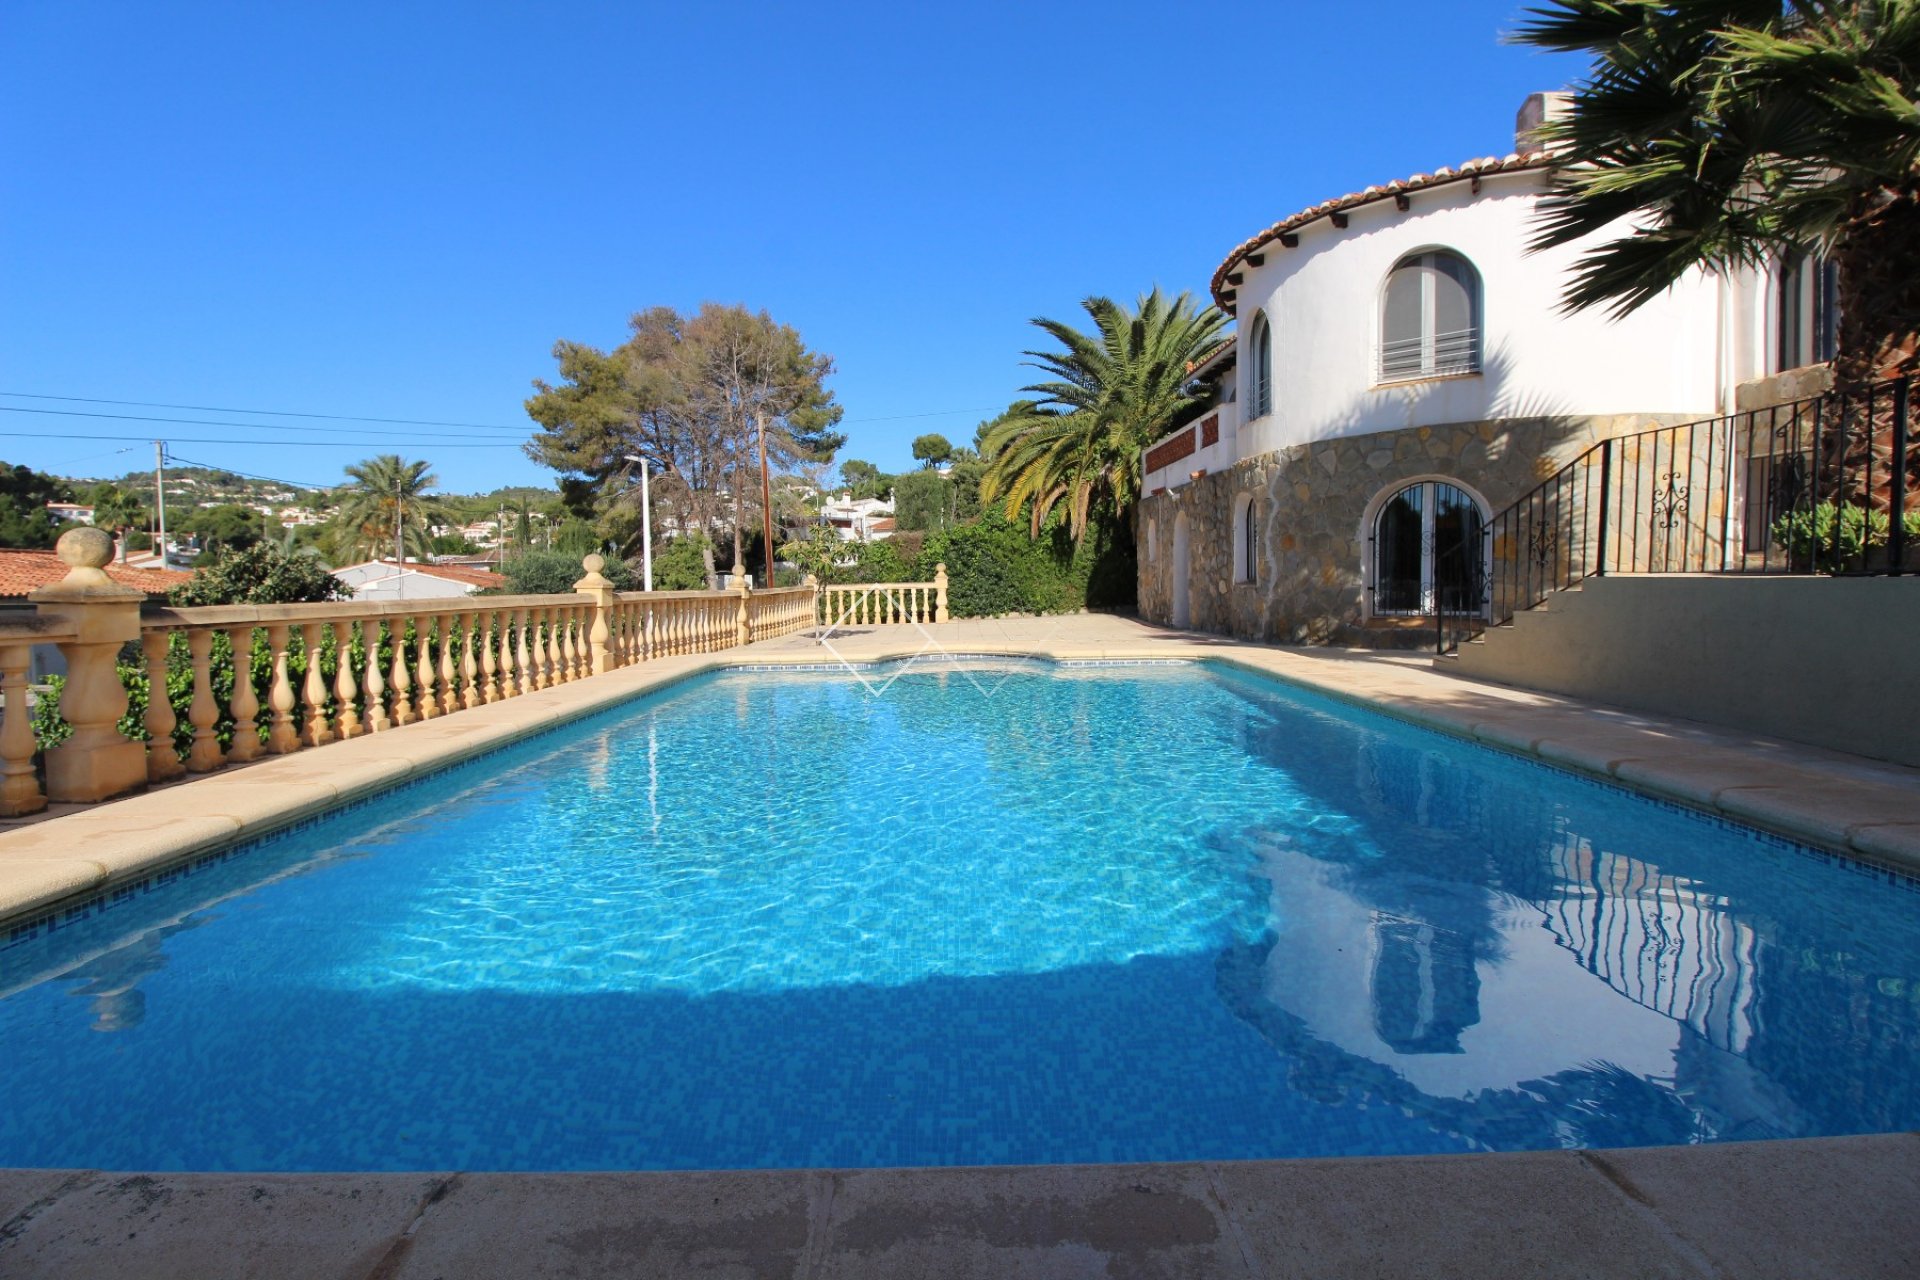 zwembad - Gerenoveerde villa te koop in Benissa, 400m van strand